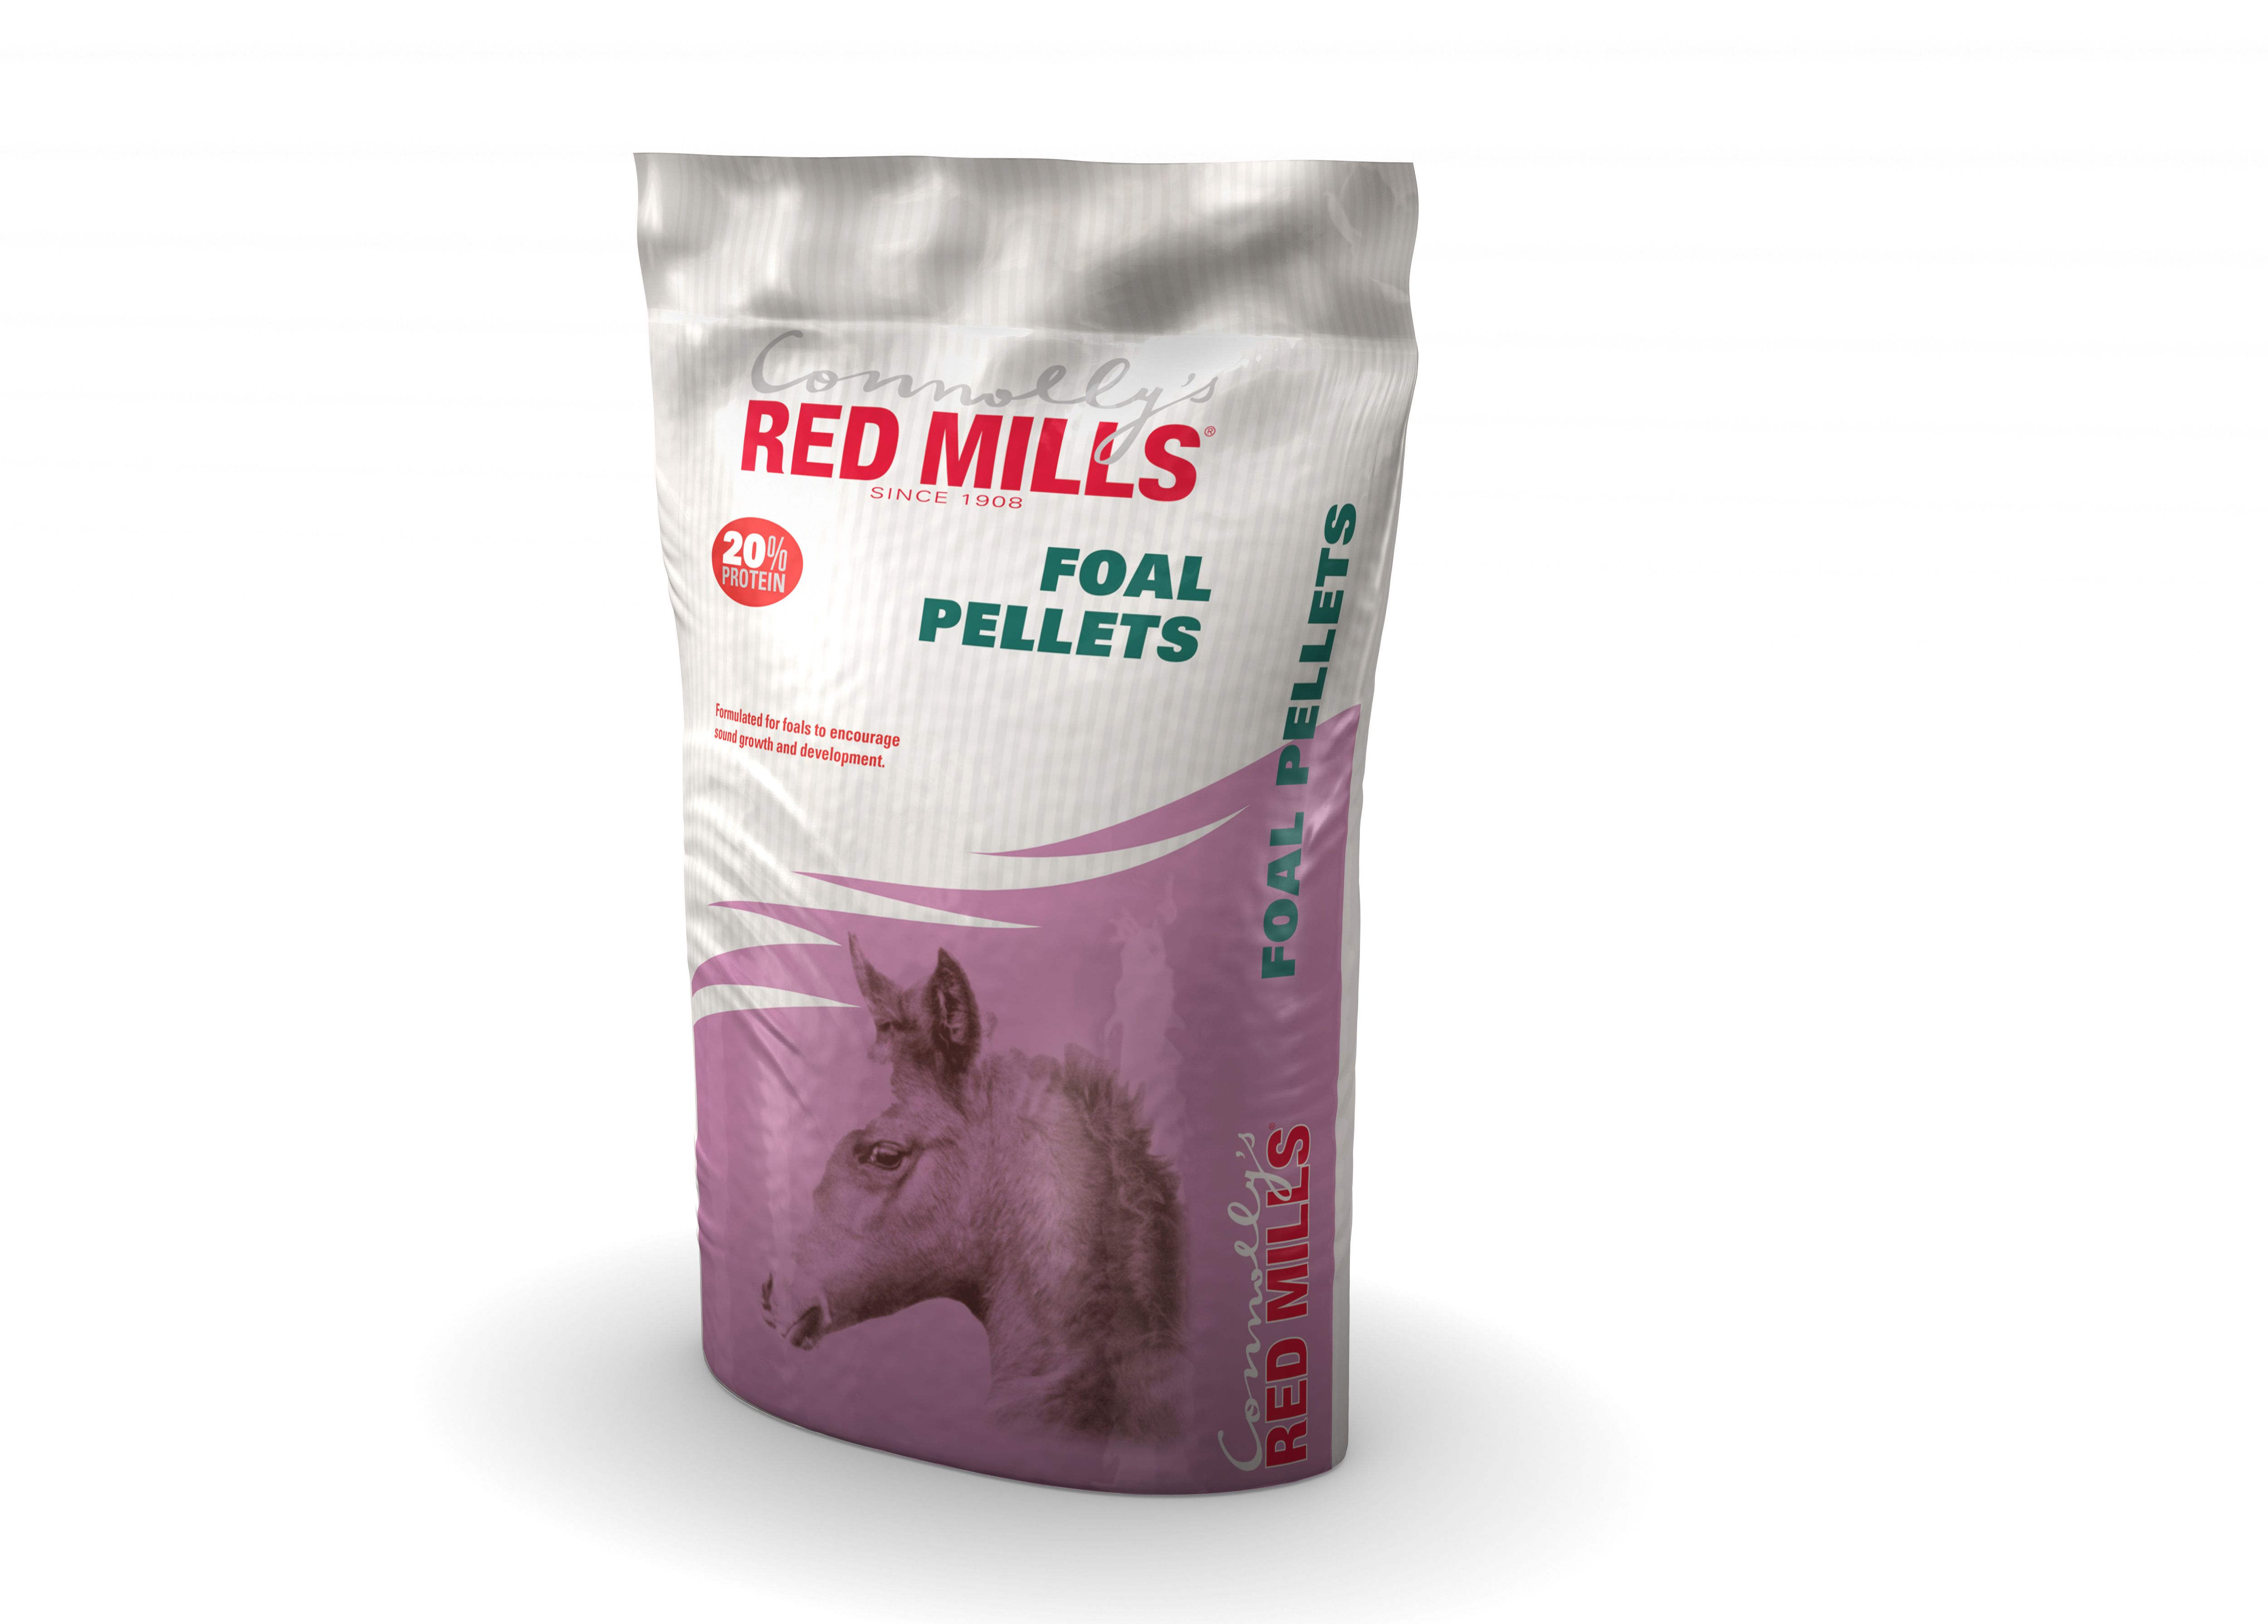 Red Mills Foal Pellets 20%